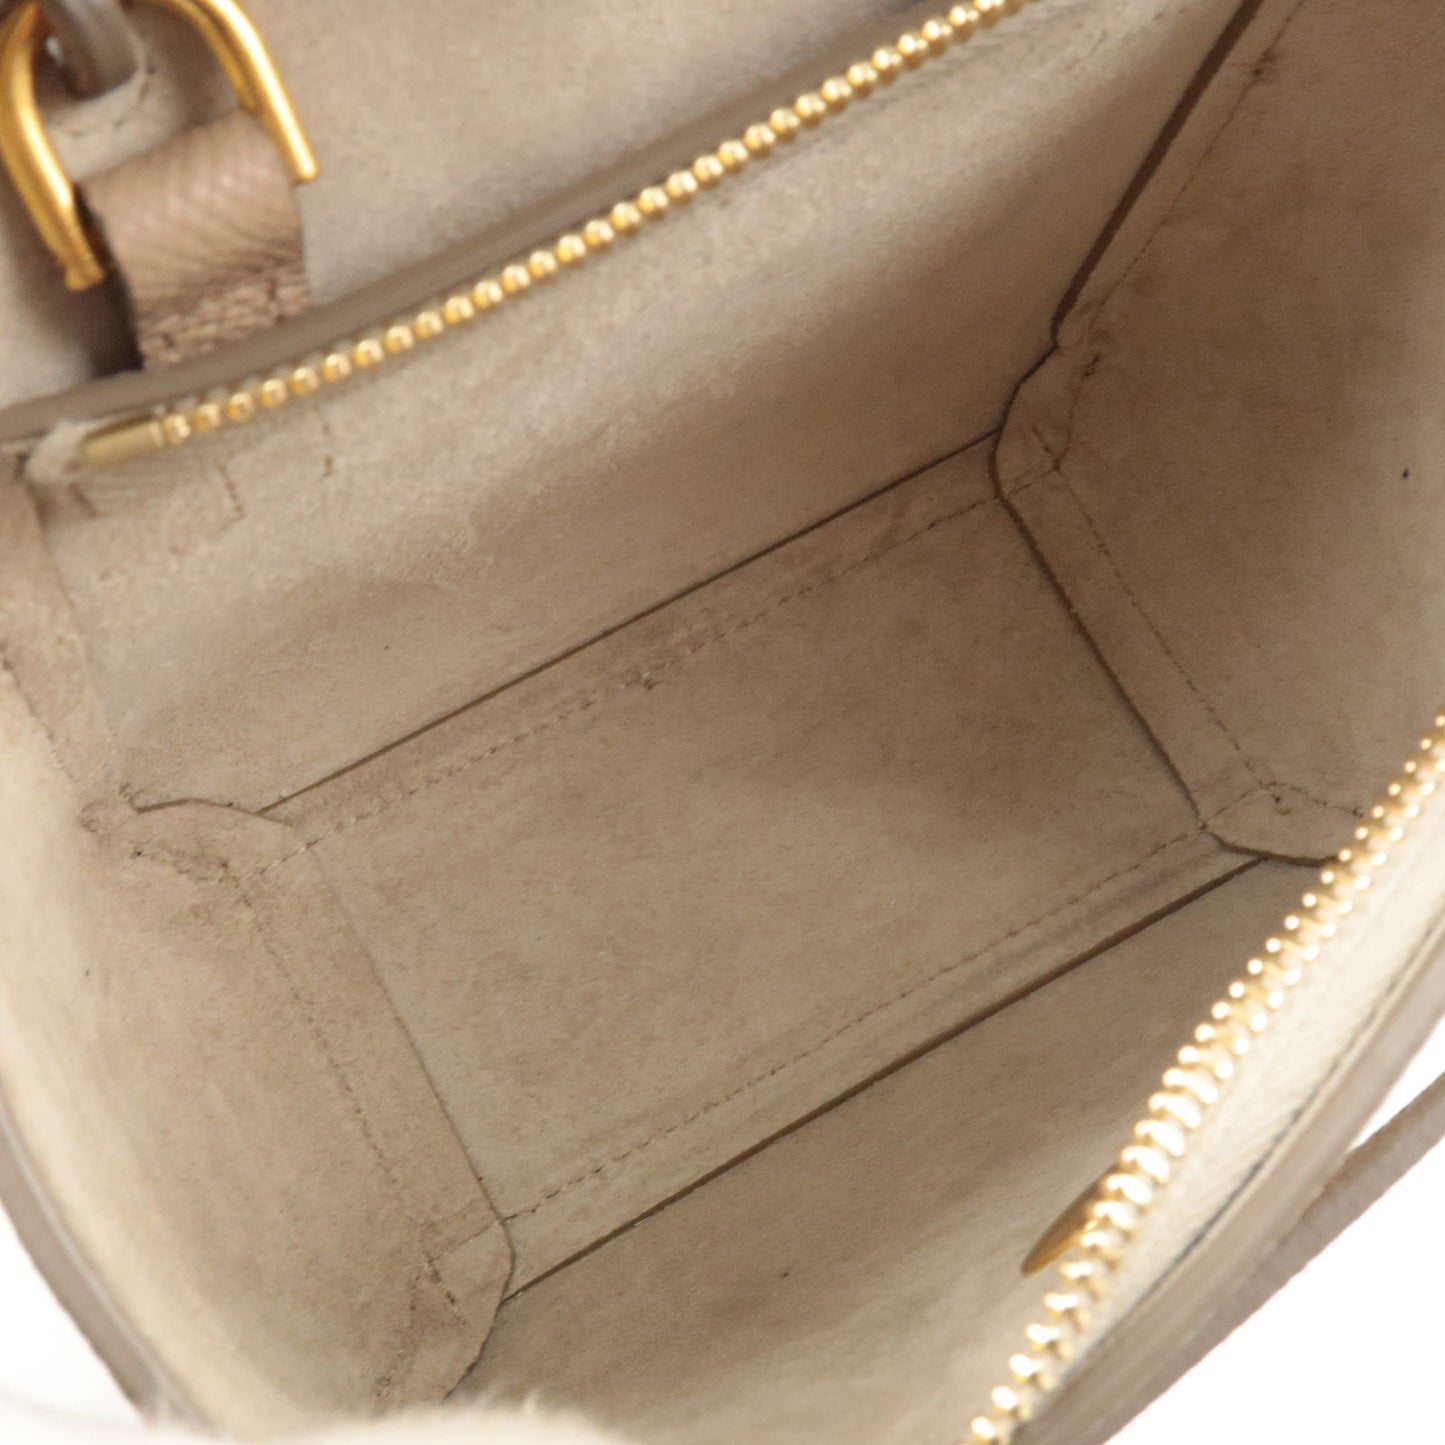 CELINE Leather Pico Belt Bag 2Way Bag Light Taupe 194263